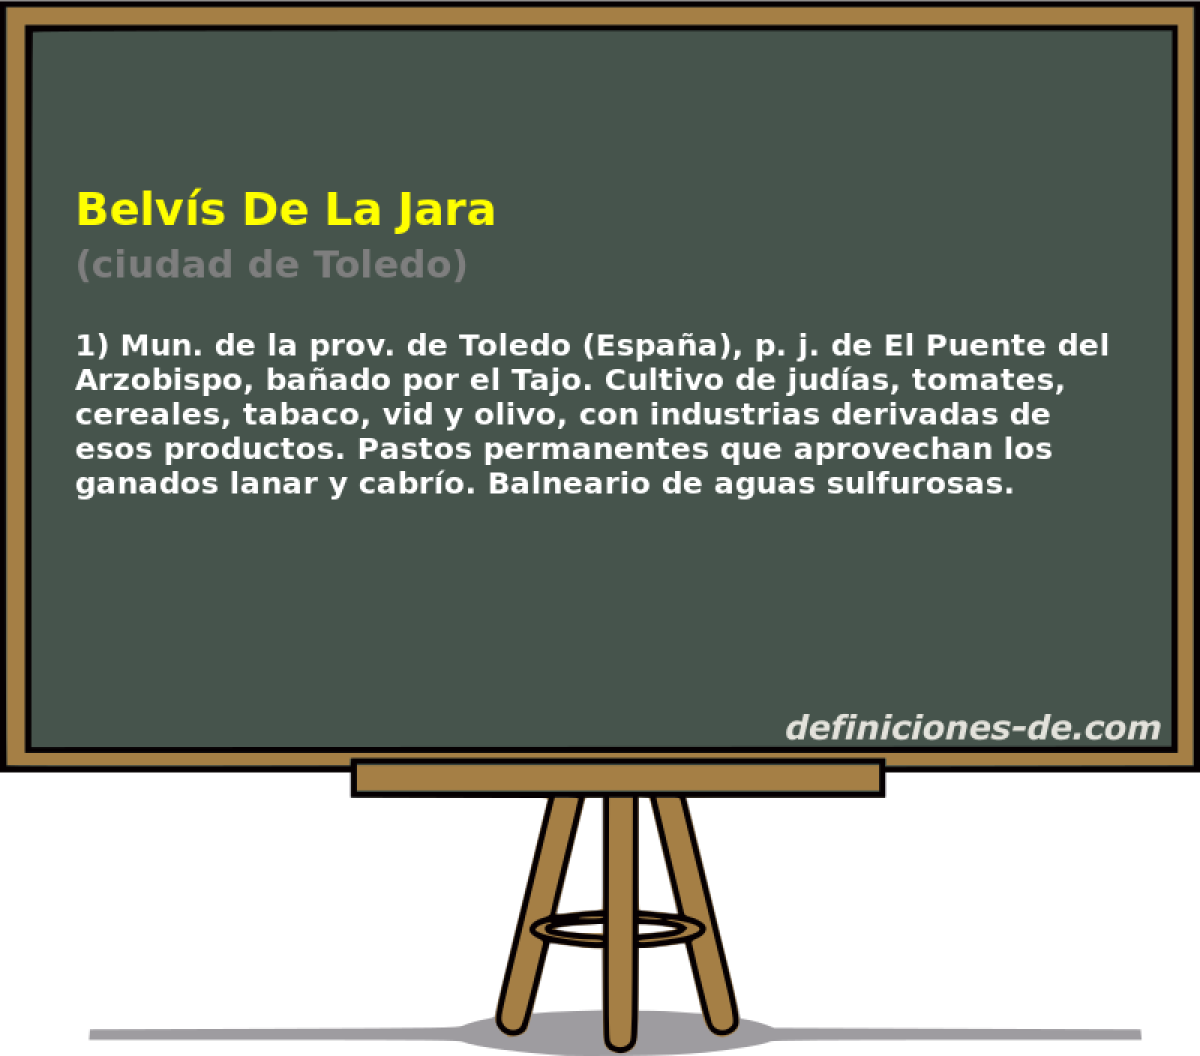 Belvs De La Jara (ciudad de Toledo)